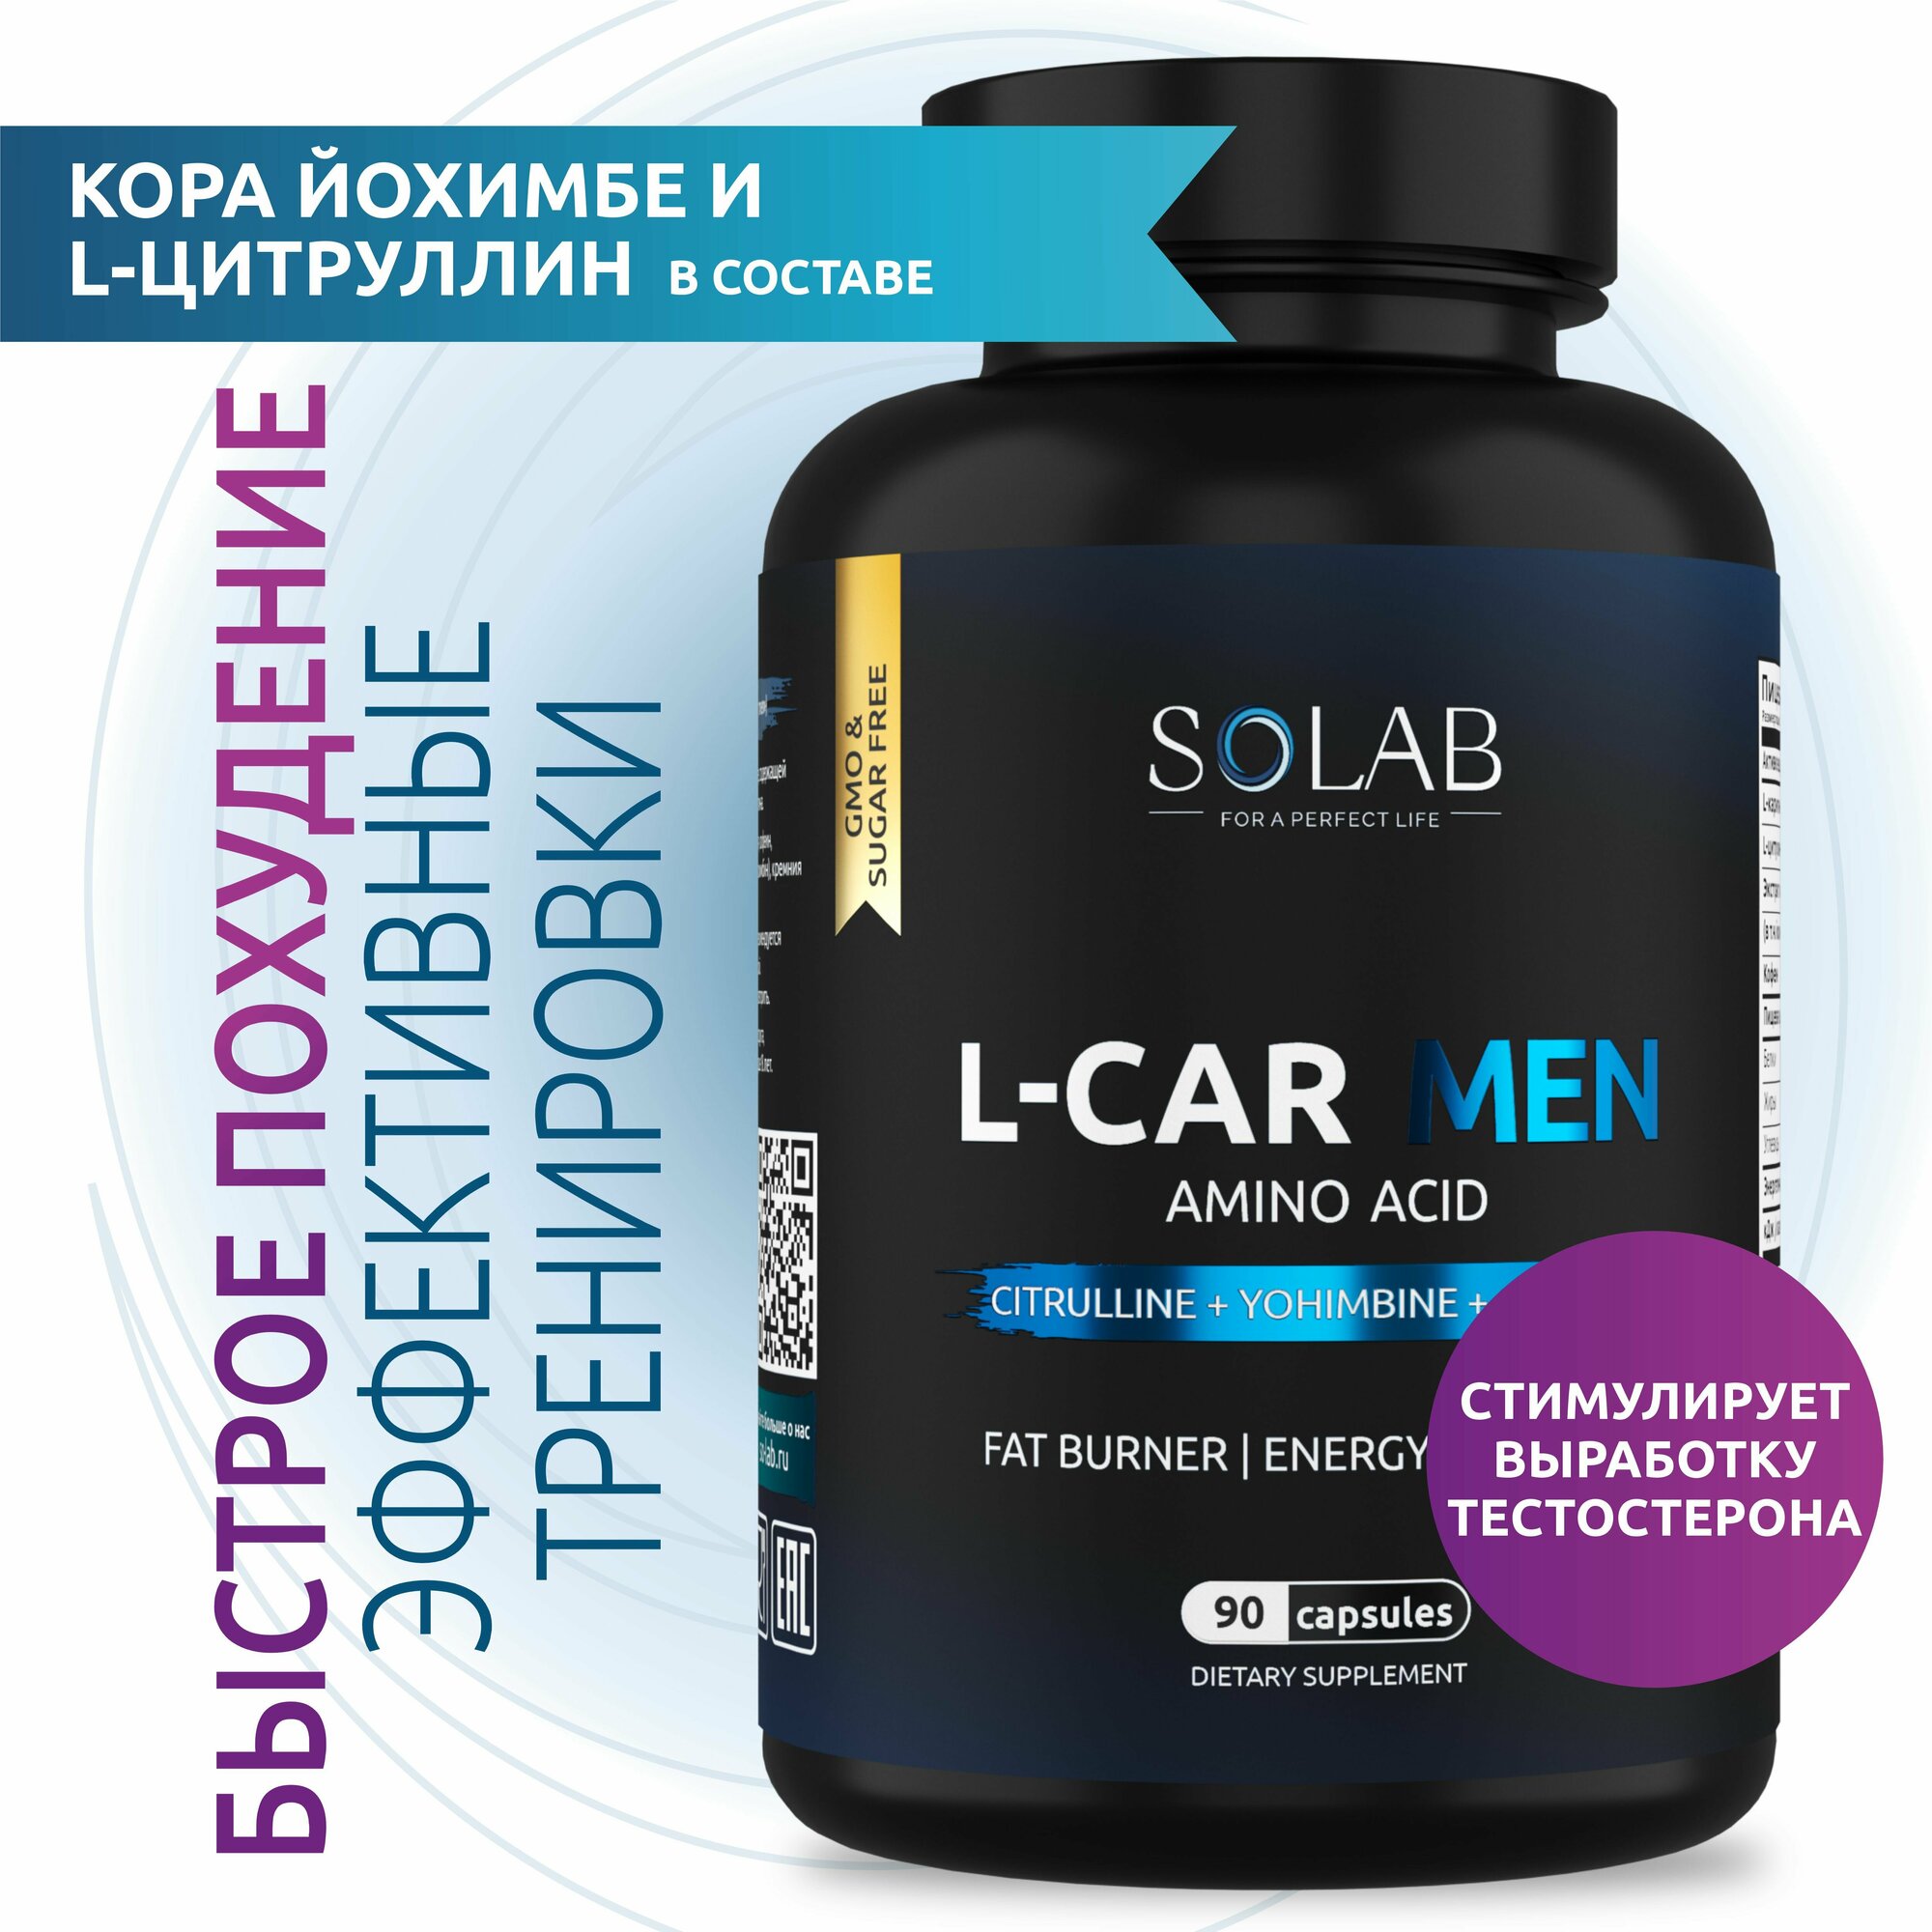 SOLAB L-Carnitine Men для мужчин энергетик л-карнитин жиросжигатель для похудения 90 капсул